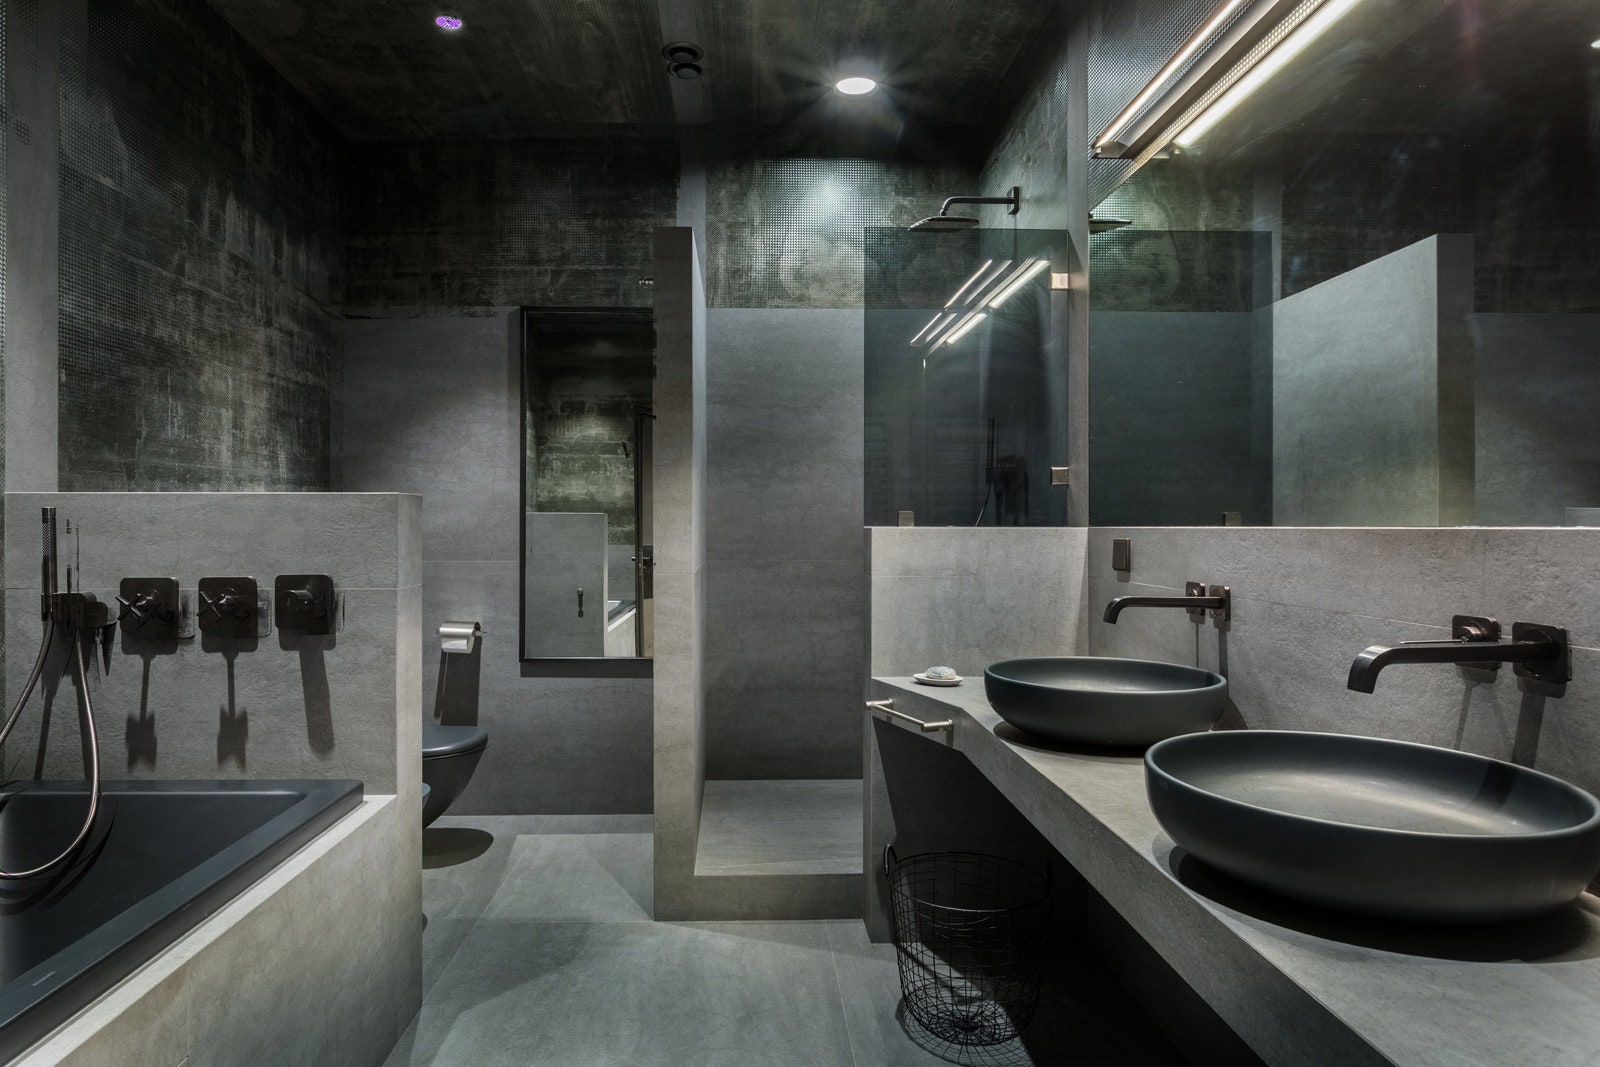 Ванная комната. В этом помещении два типа архскина — с поверхностью имитирующей ржавый металл и бетон тектоничная...